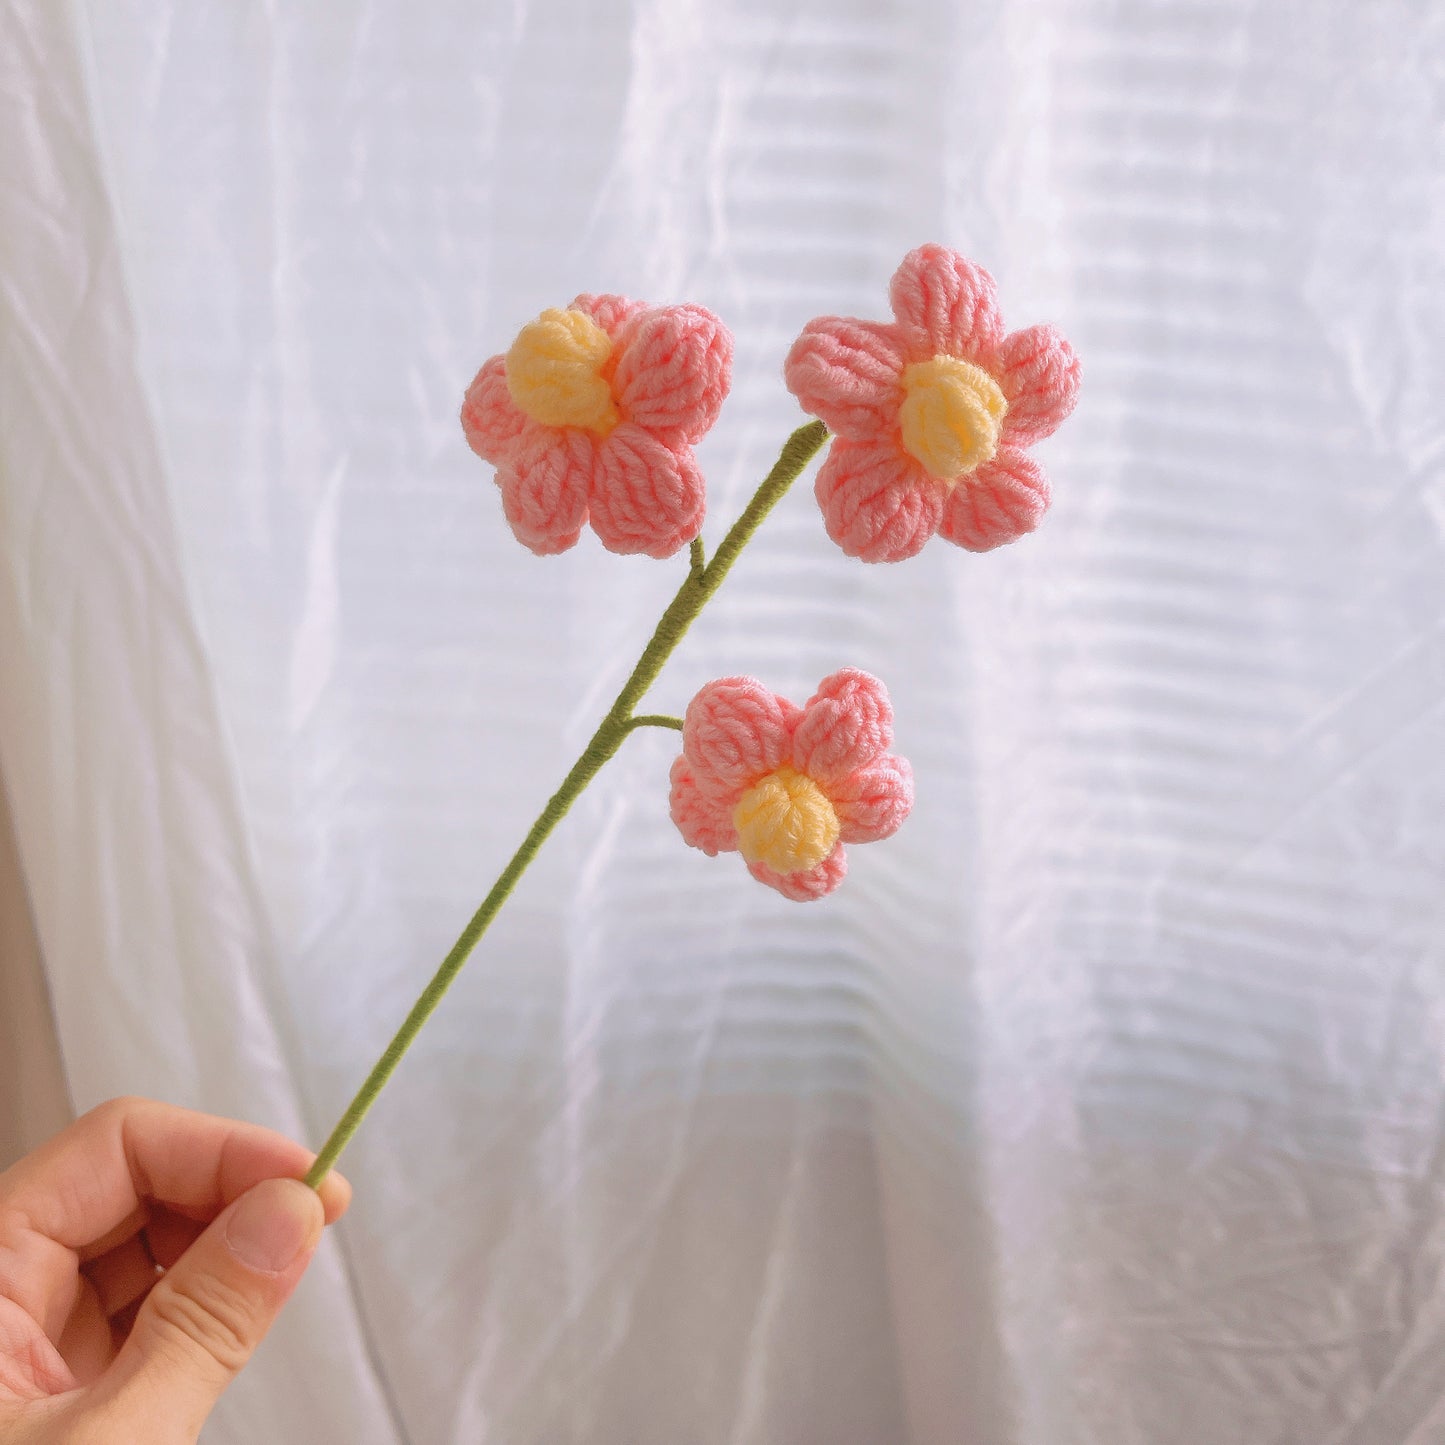 Murmures au crochet faites à la main de pétales de bonheur Bouquet de roses, tulipes, tournesols, marguerites et œillets - Jolies roses